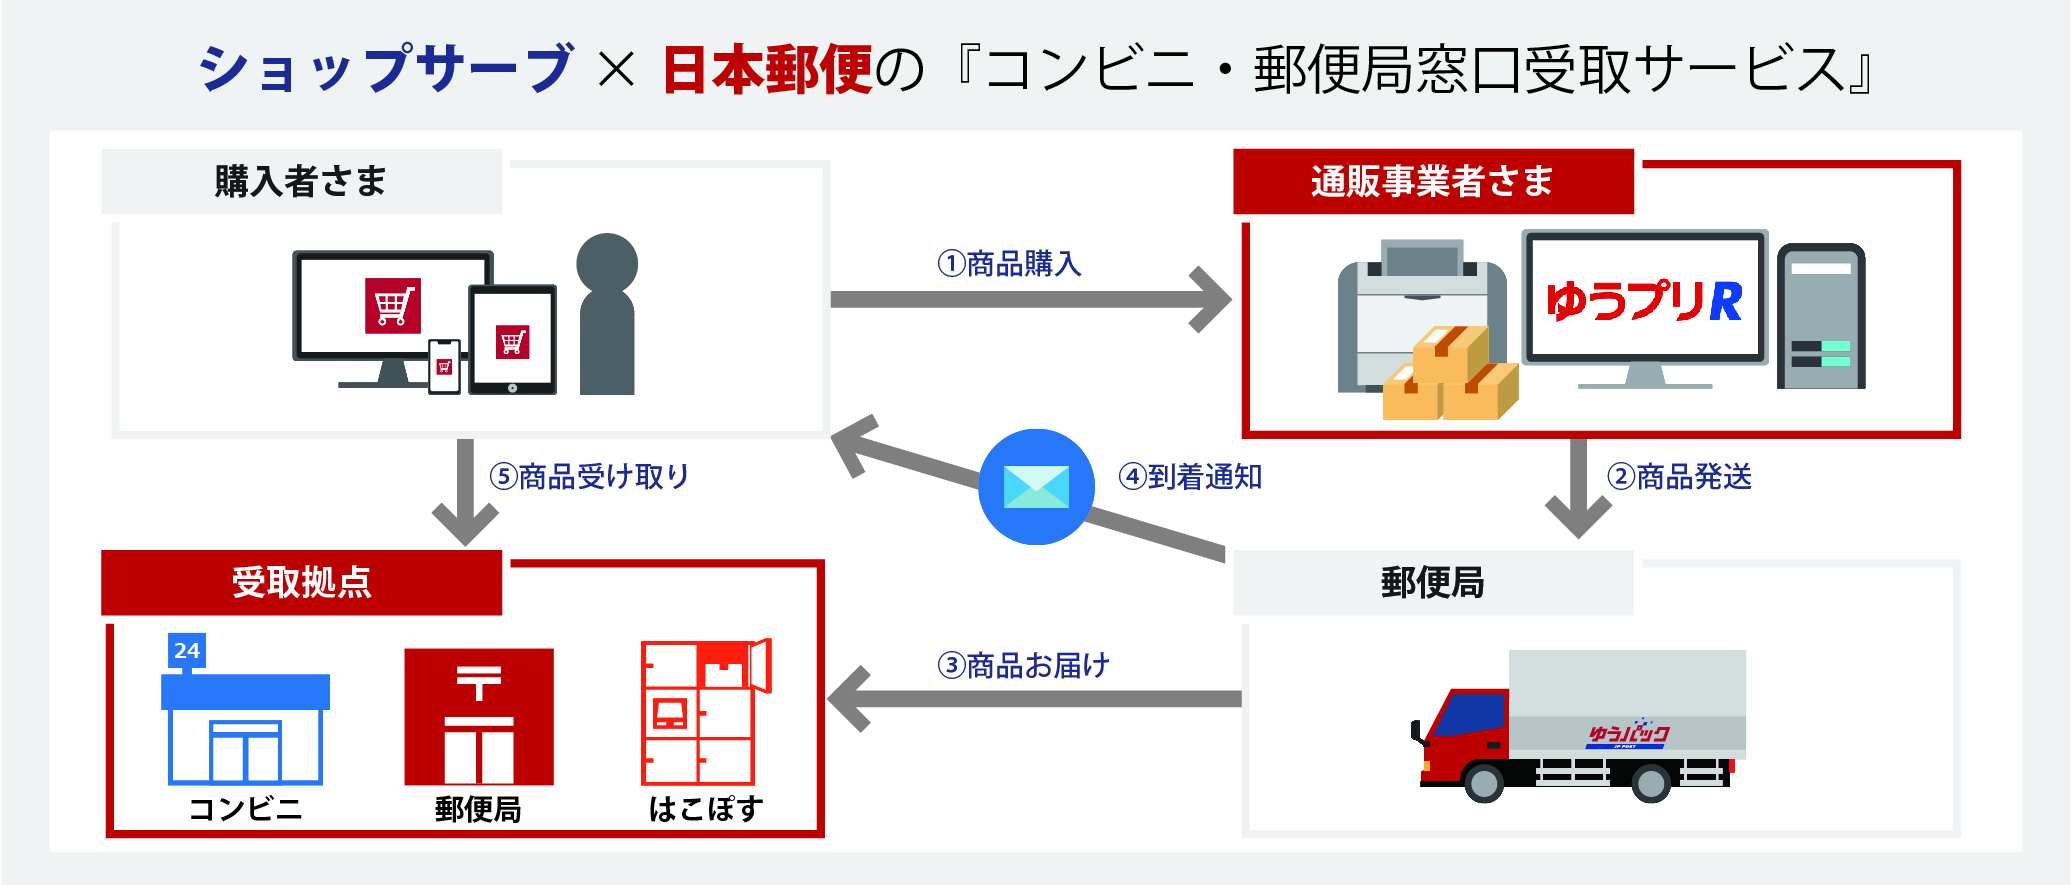 ショップサーブ×日本郵便の「コンビニ・郵便局窓口受取サービス」